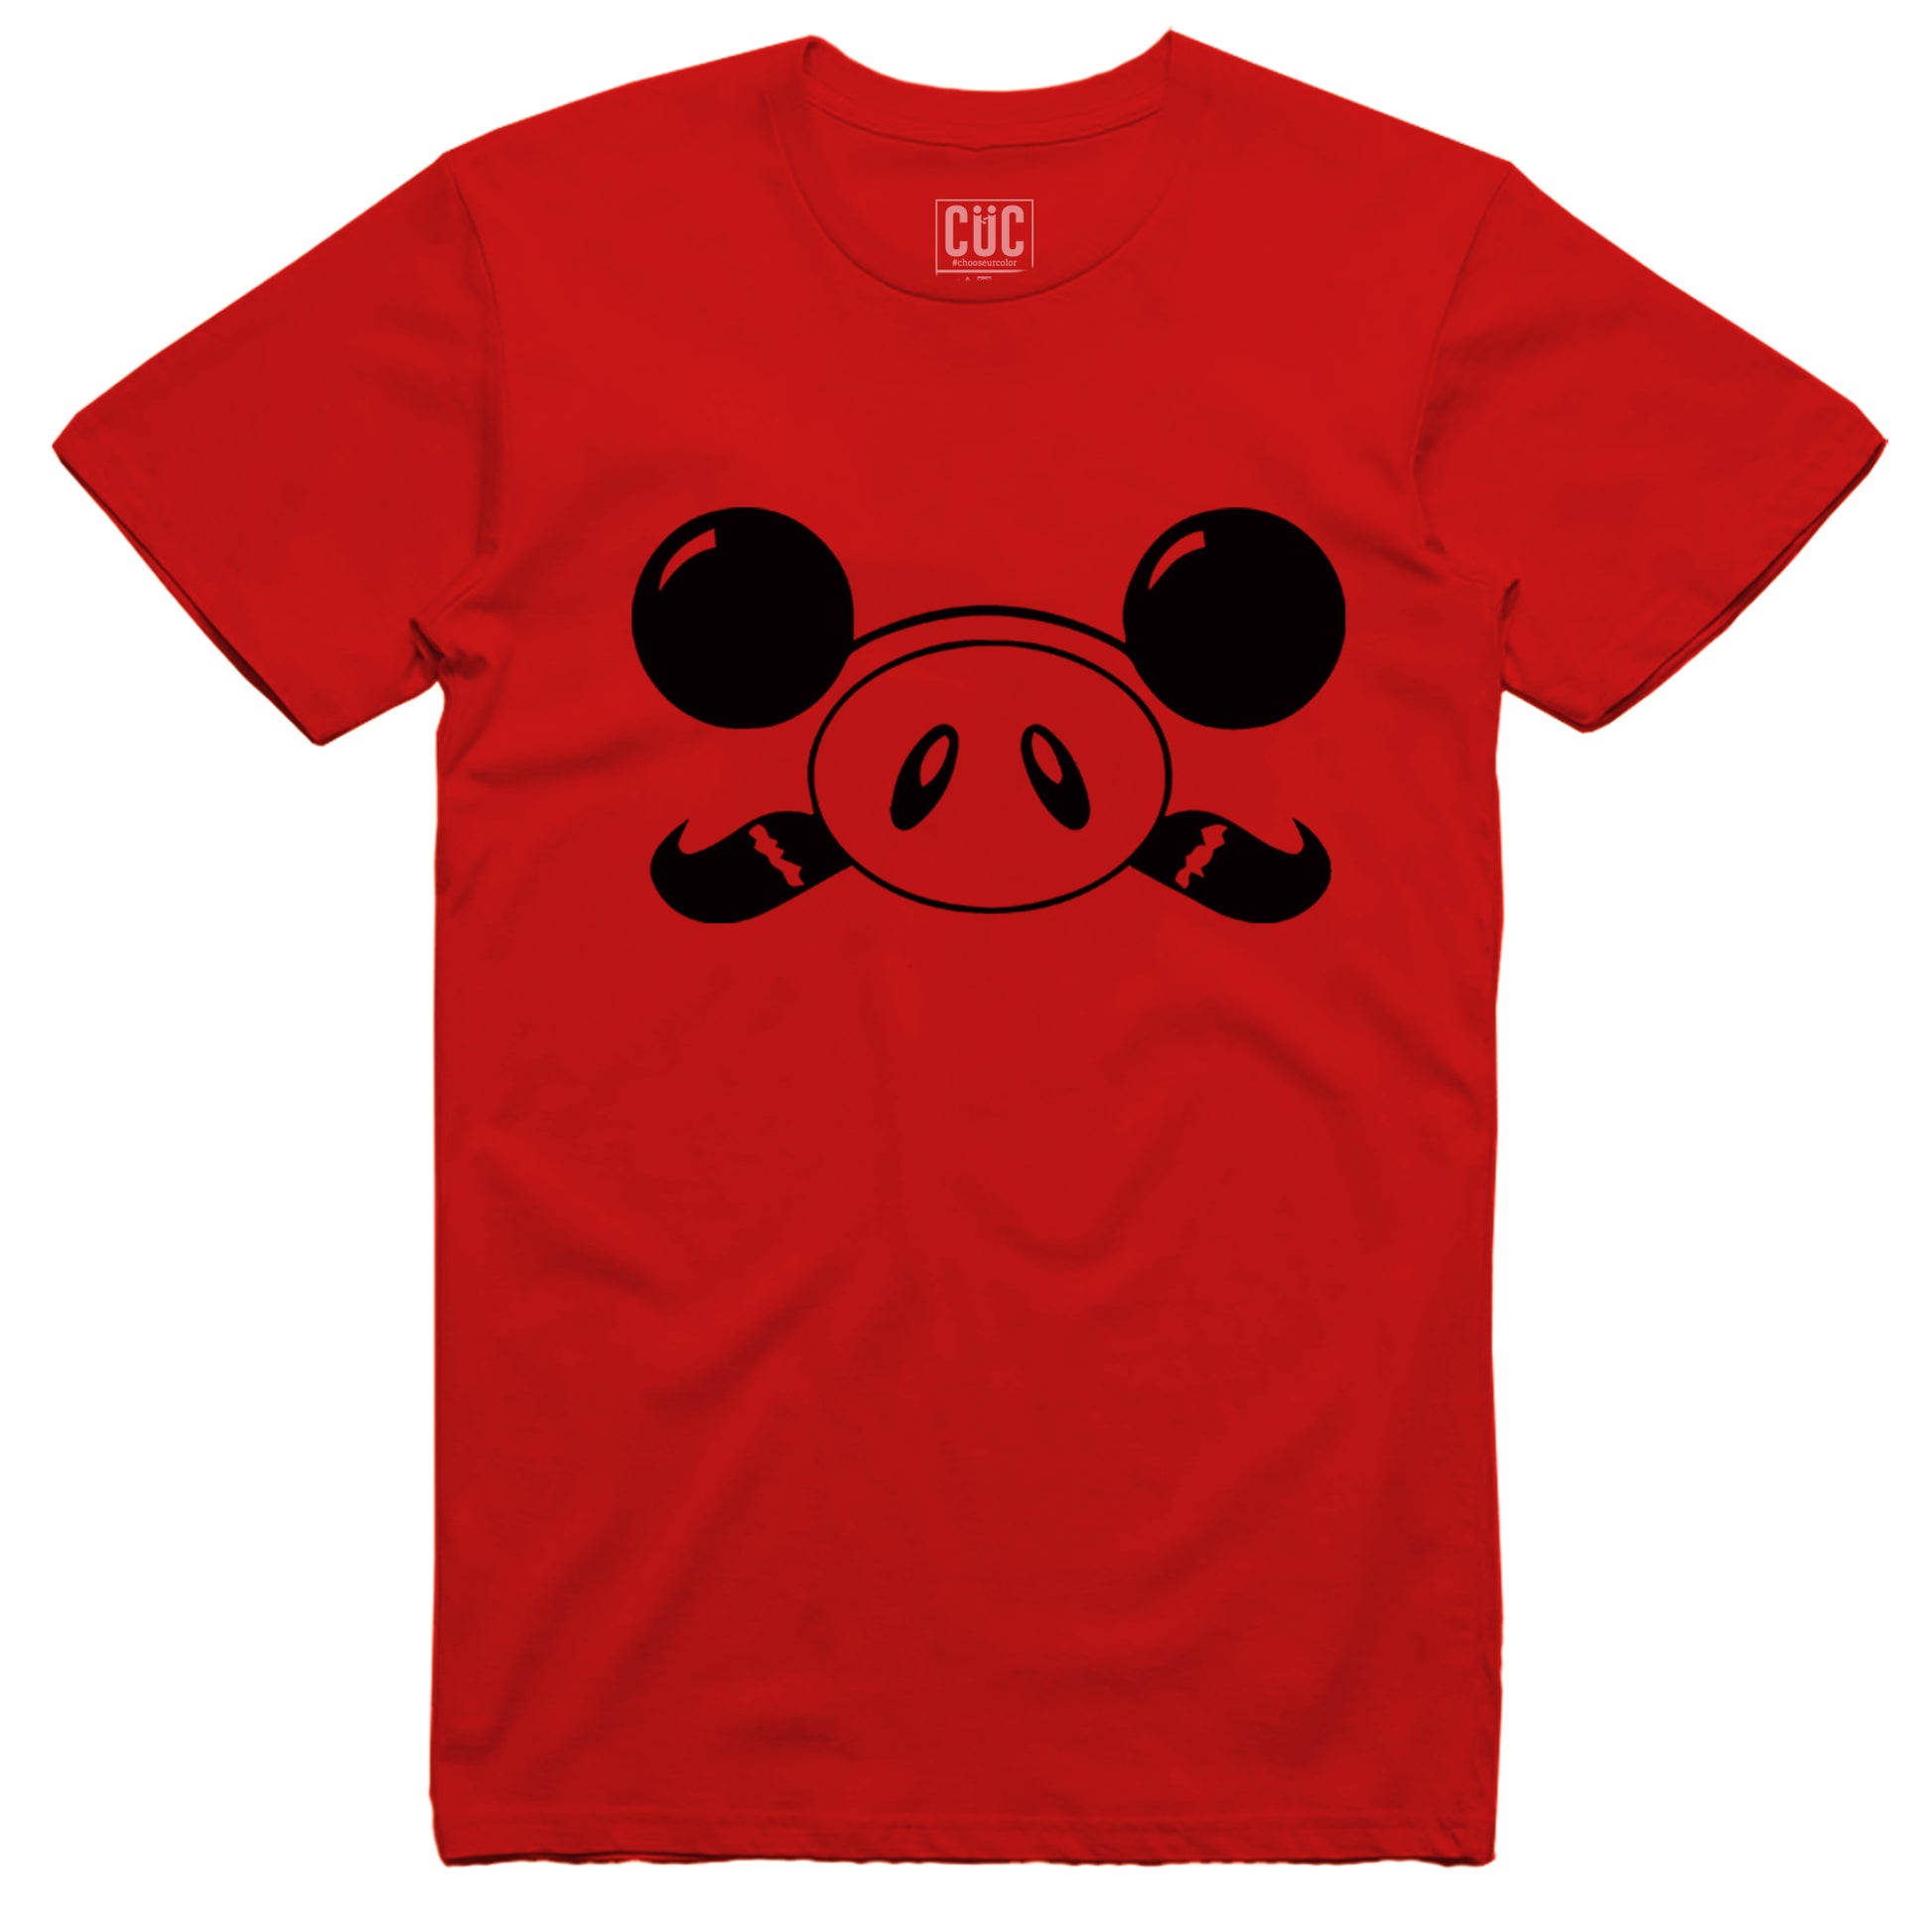 CUC T-Shirt Porco Rosso Face - Anime Cult- #chooseurcolor - CUC chooseurcolor